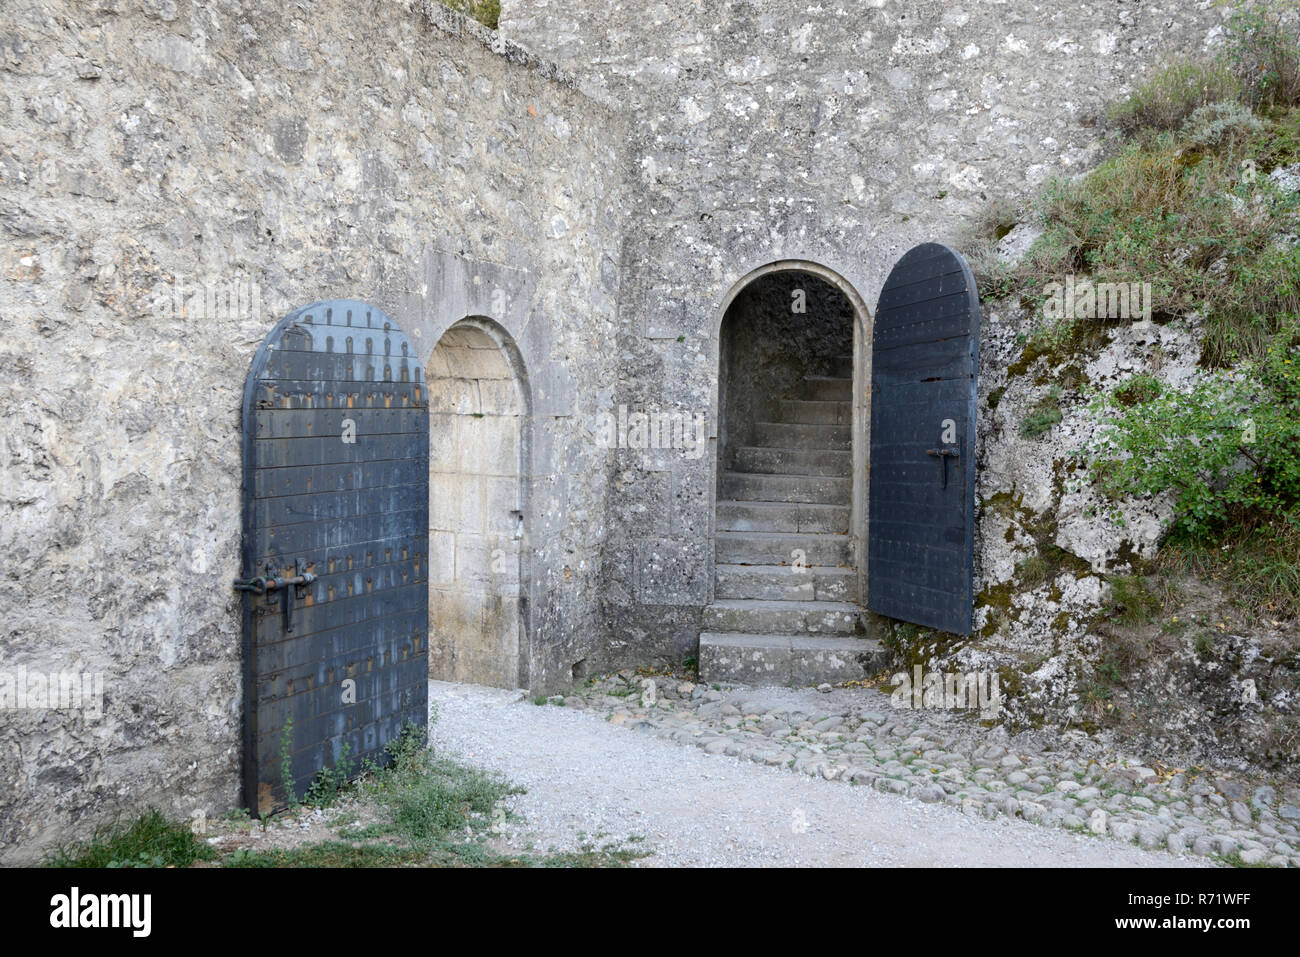 Metall Sicherheitstüren, Torbögen und gepflasterten Pfad in der mittelalterlichen Zitadelle, die Burg oder Festung Sisteron Alpes-de-Haute-Provence Provence Frankreich Stockfoto